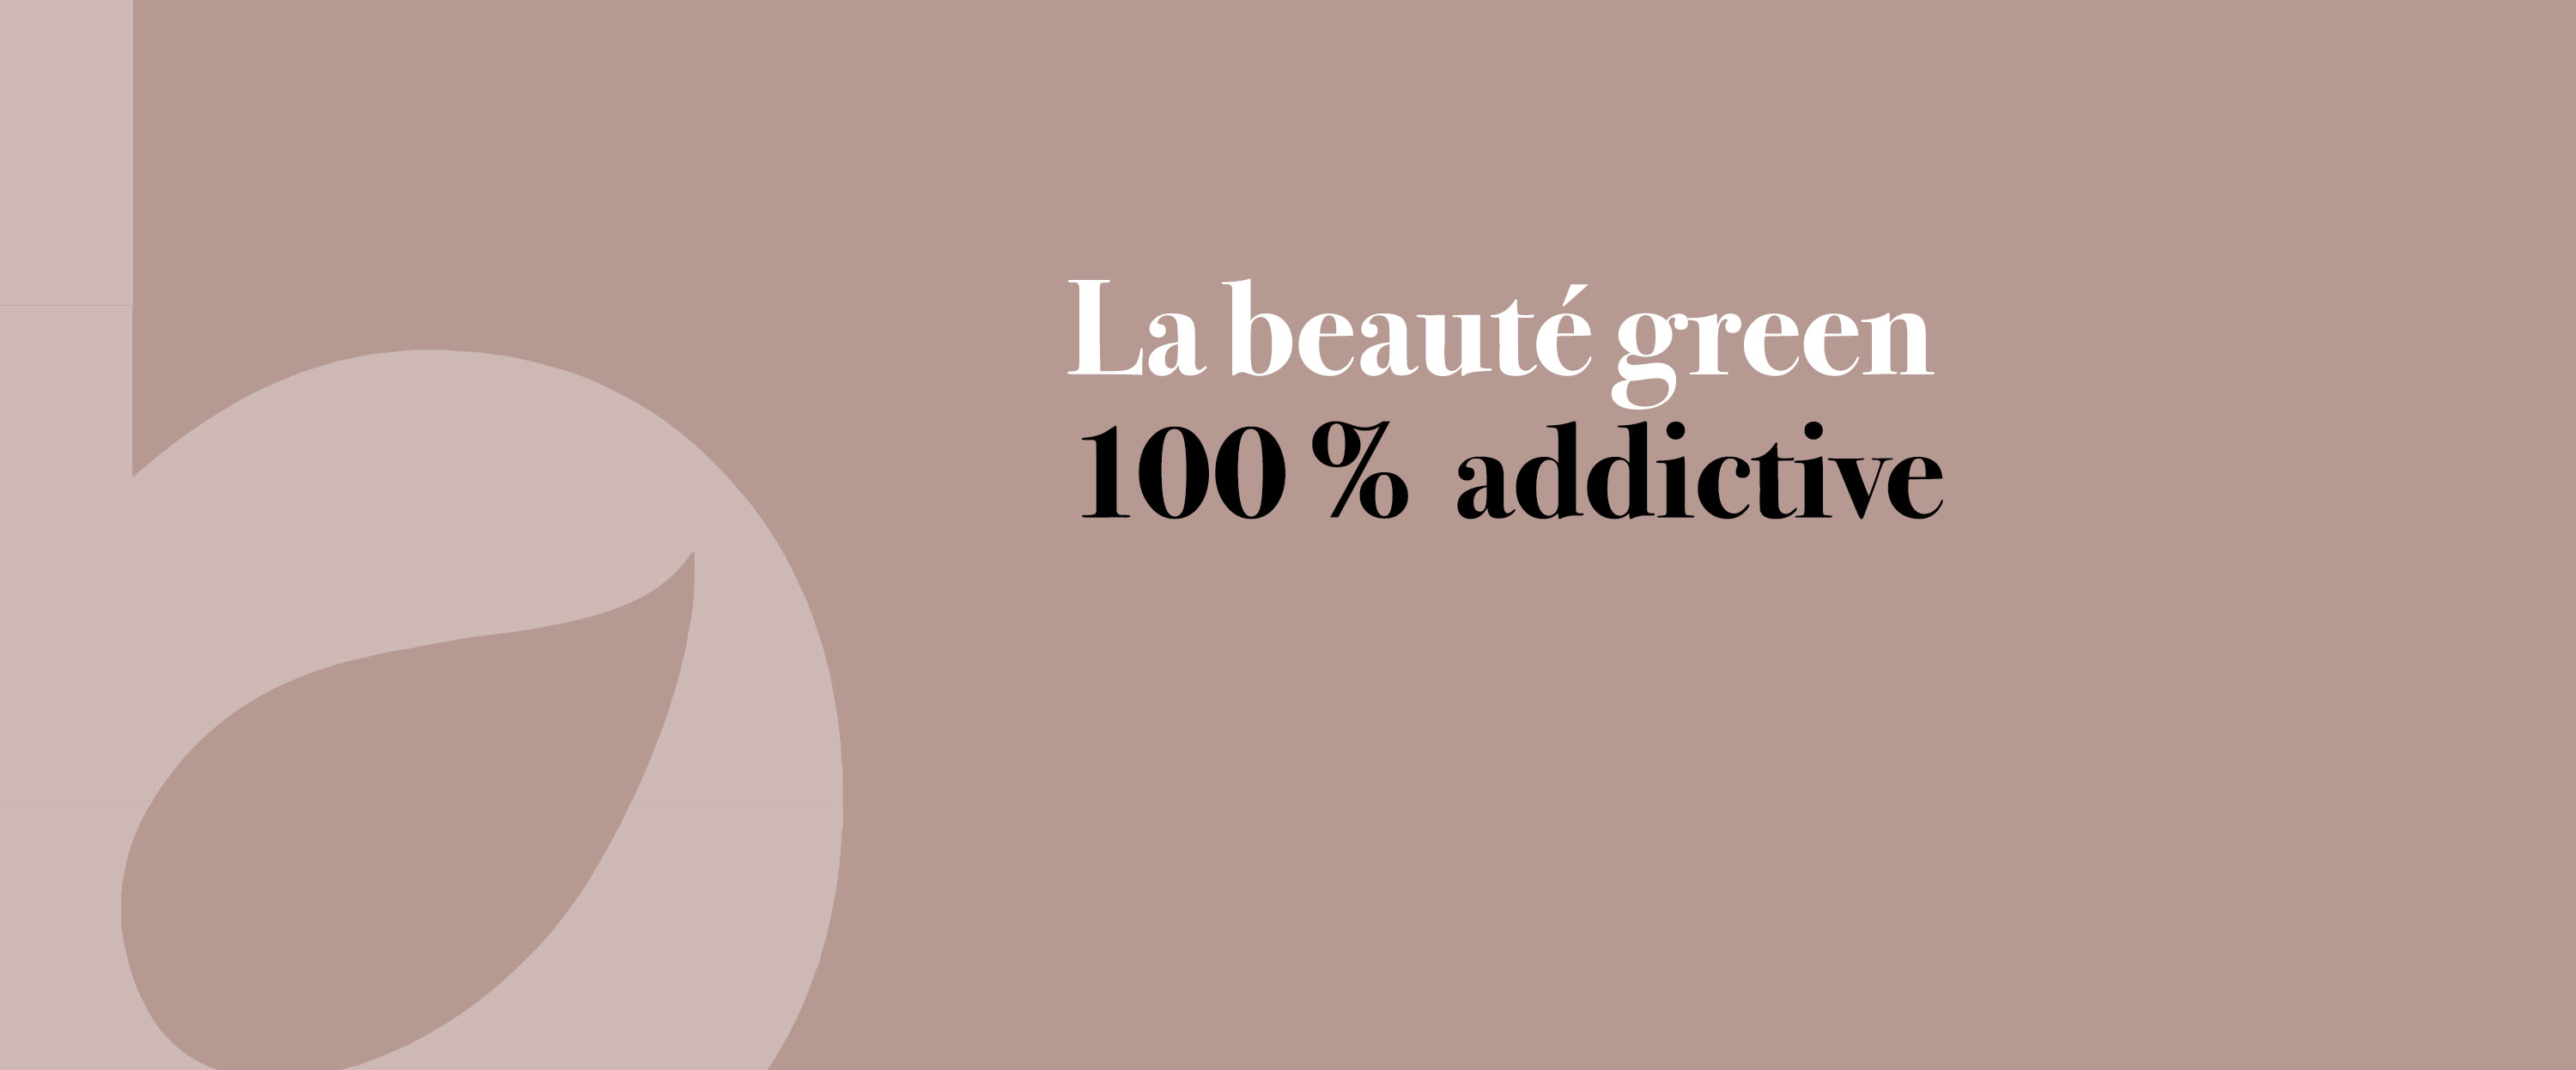 La beauté green 100% addictuive - Guide maquillage